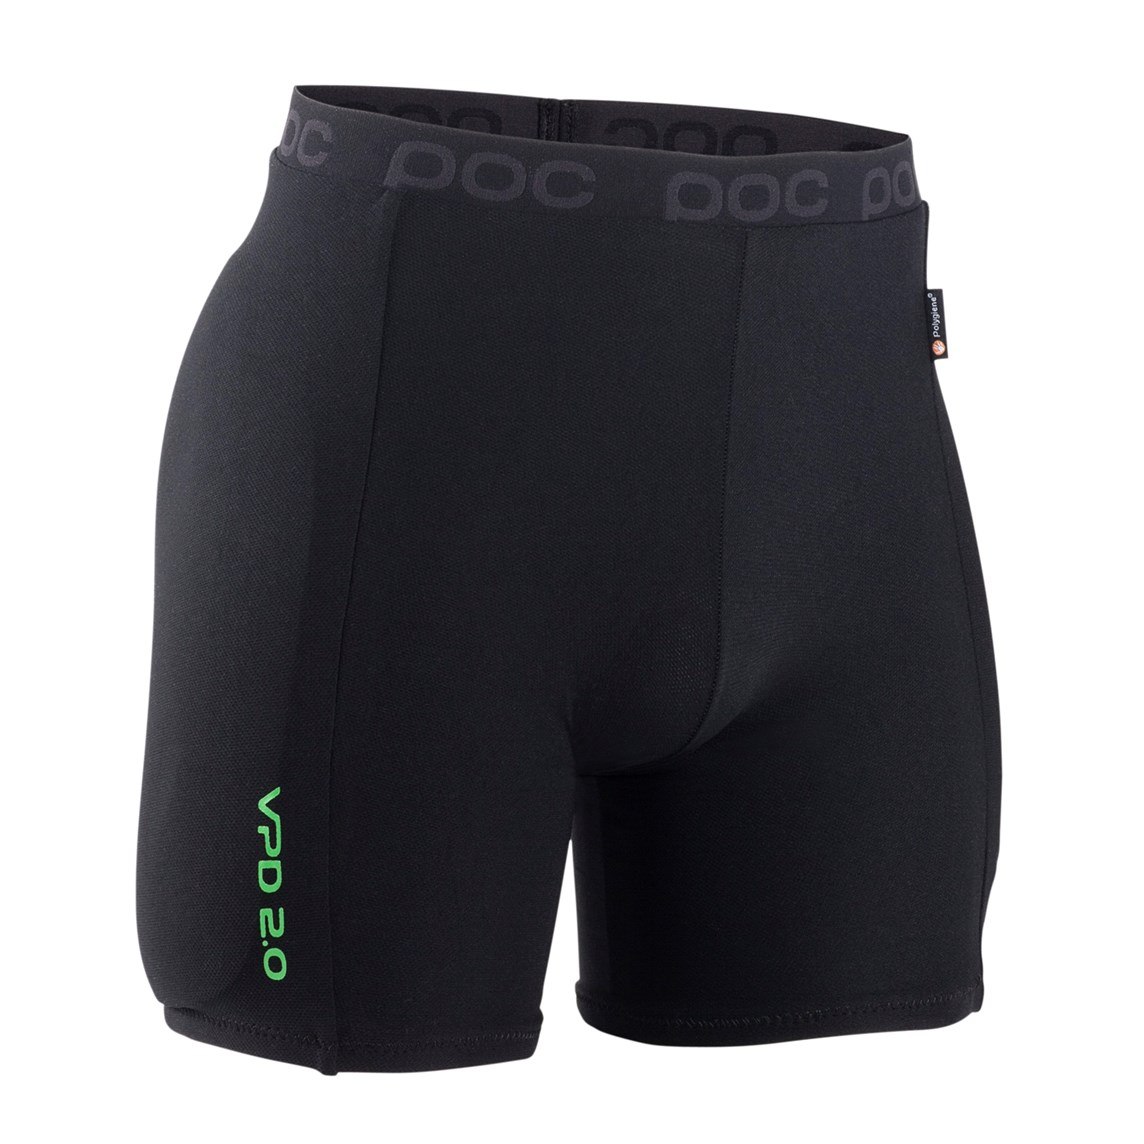 Foto de POC Hip VPD 2.0 Shorts Pantalones cortos protectores - 9002 black